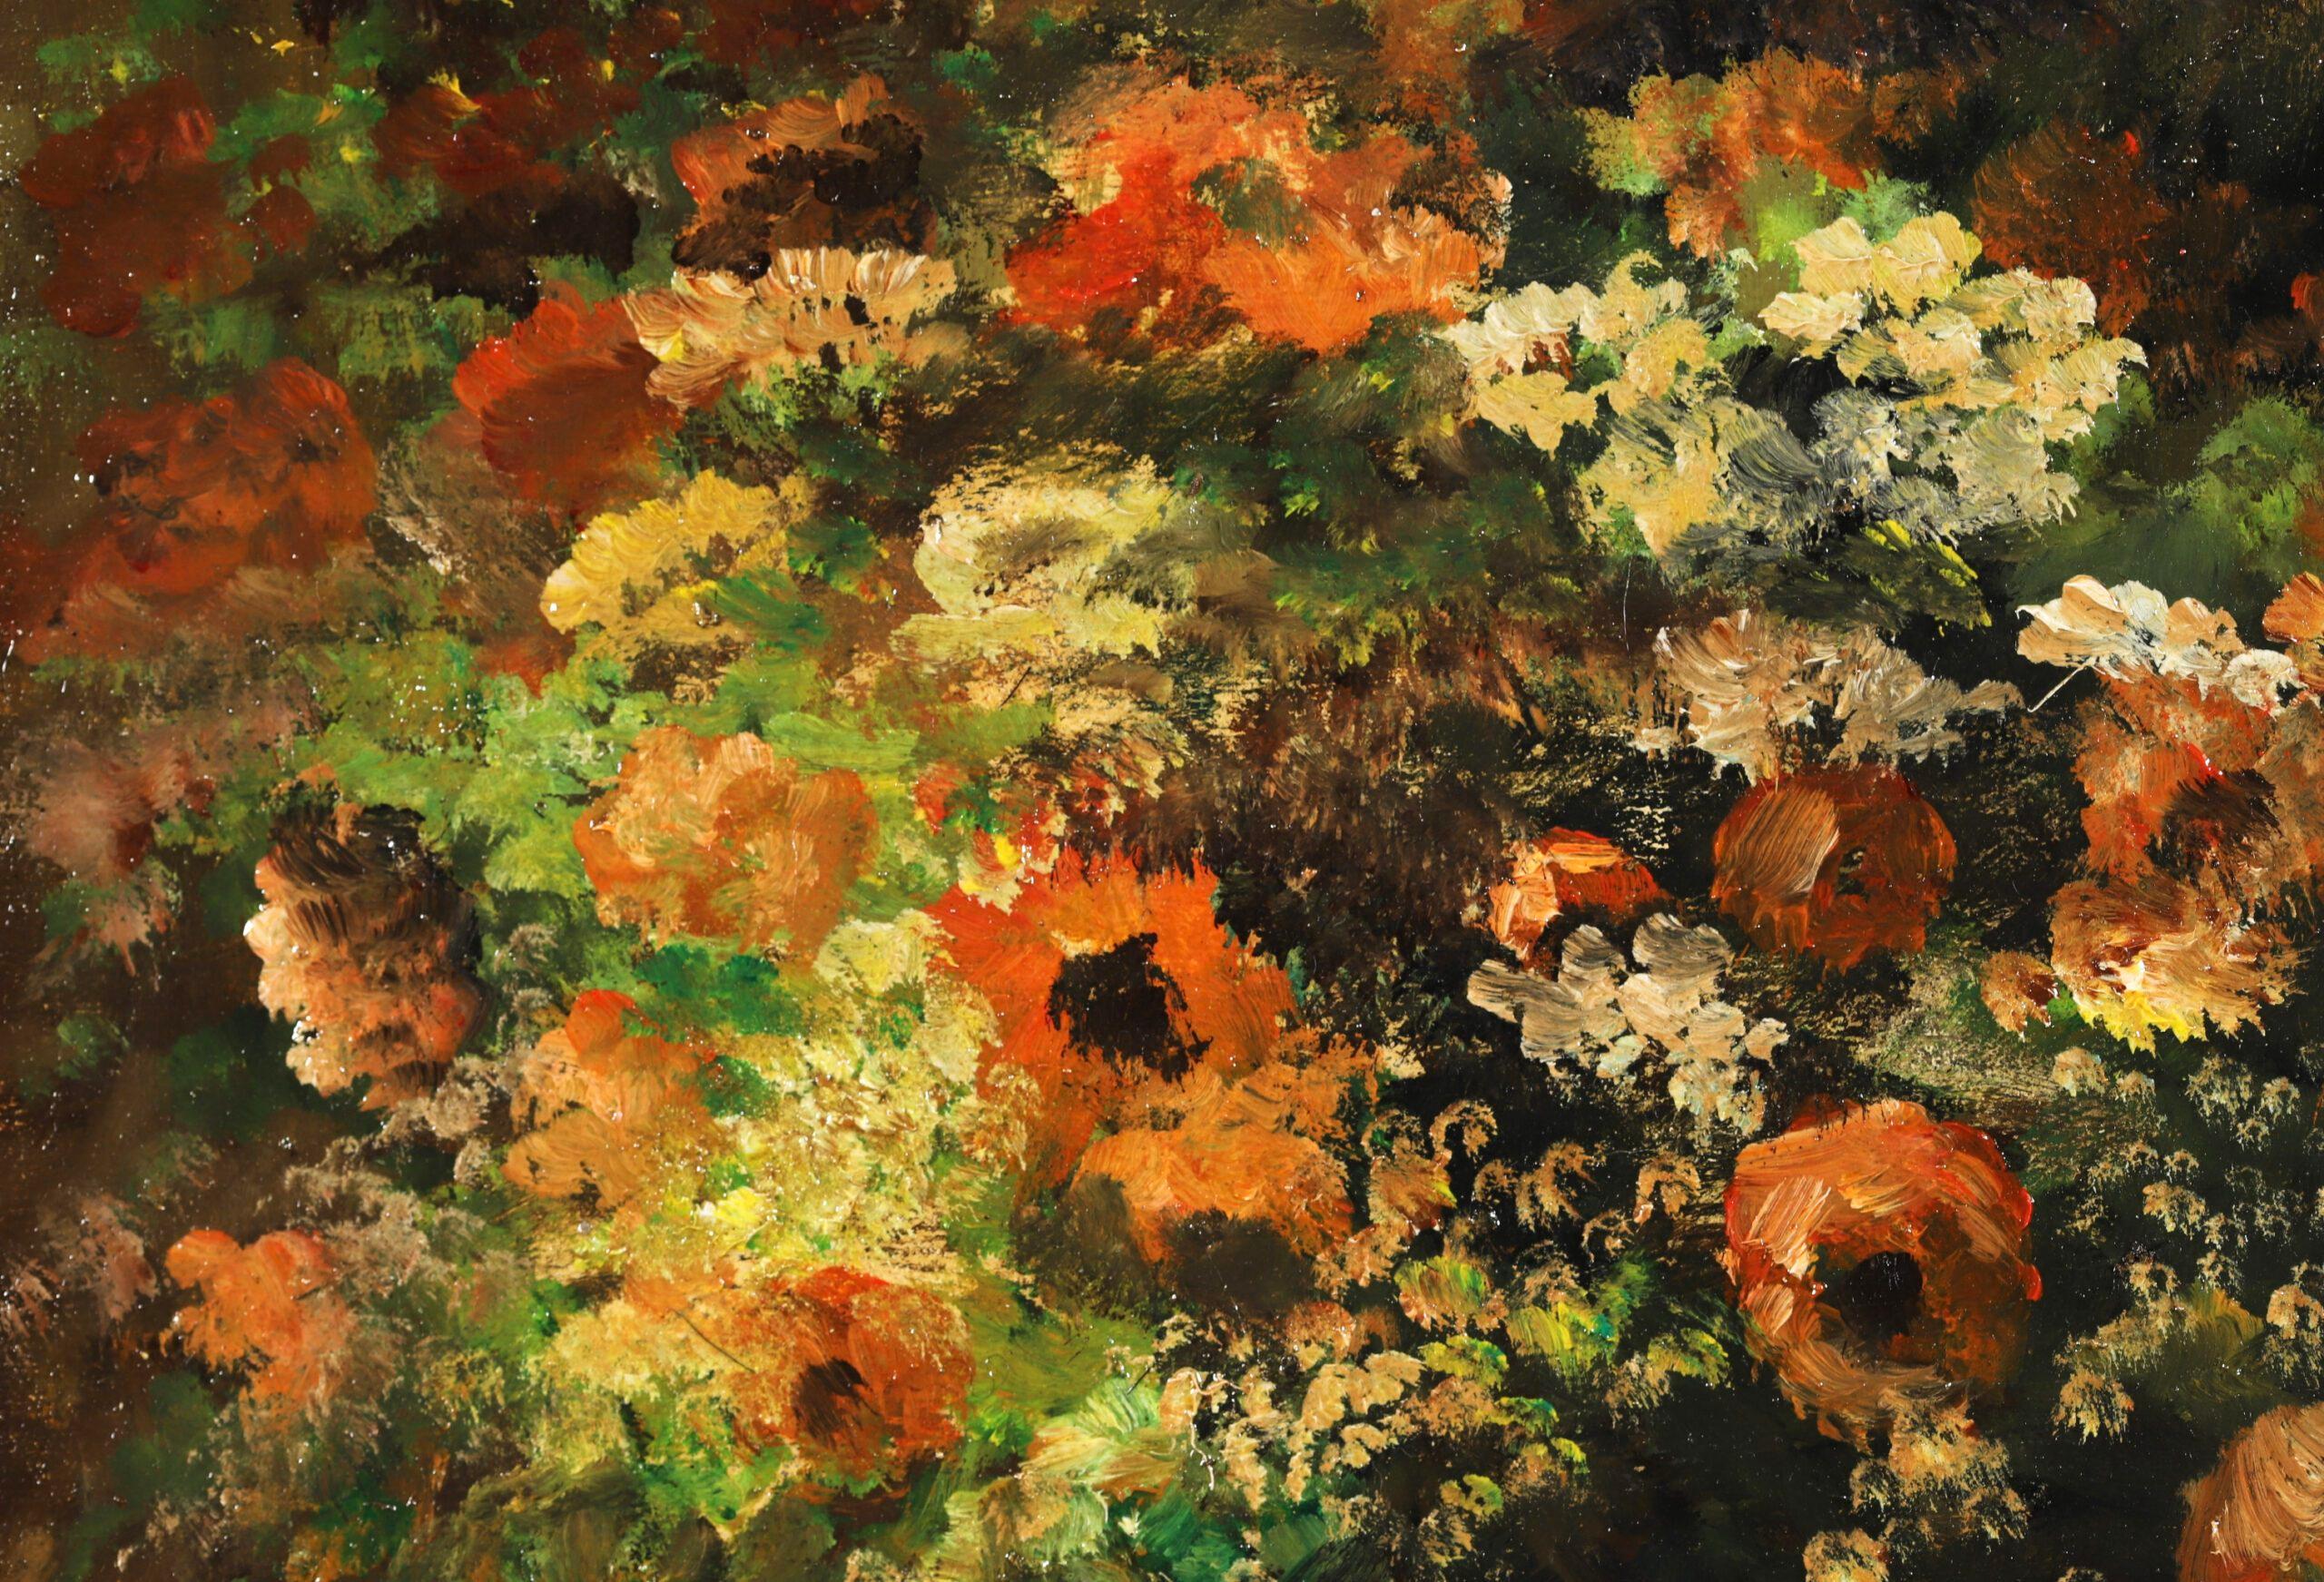 Nature morte à l'huile impressionniste sur panneau signée vers 1920 par le peintre français Edouard Cortes. L'œuvre représente un vase de fleurs aux couleurs automnales placé sur un rebord en bois devant un miroir. 

Signature :
Signé en bas à